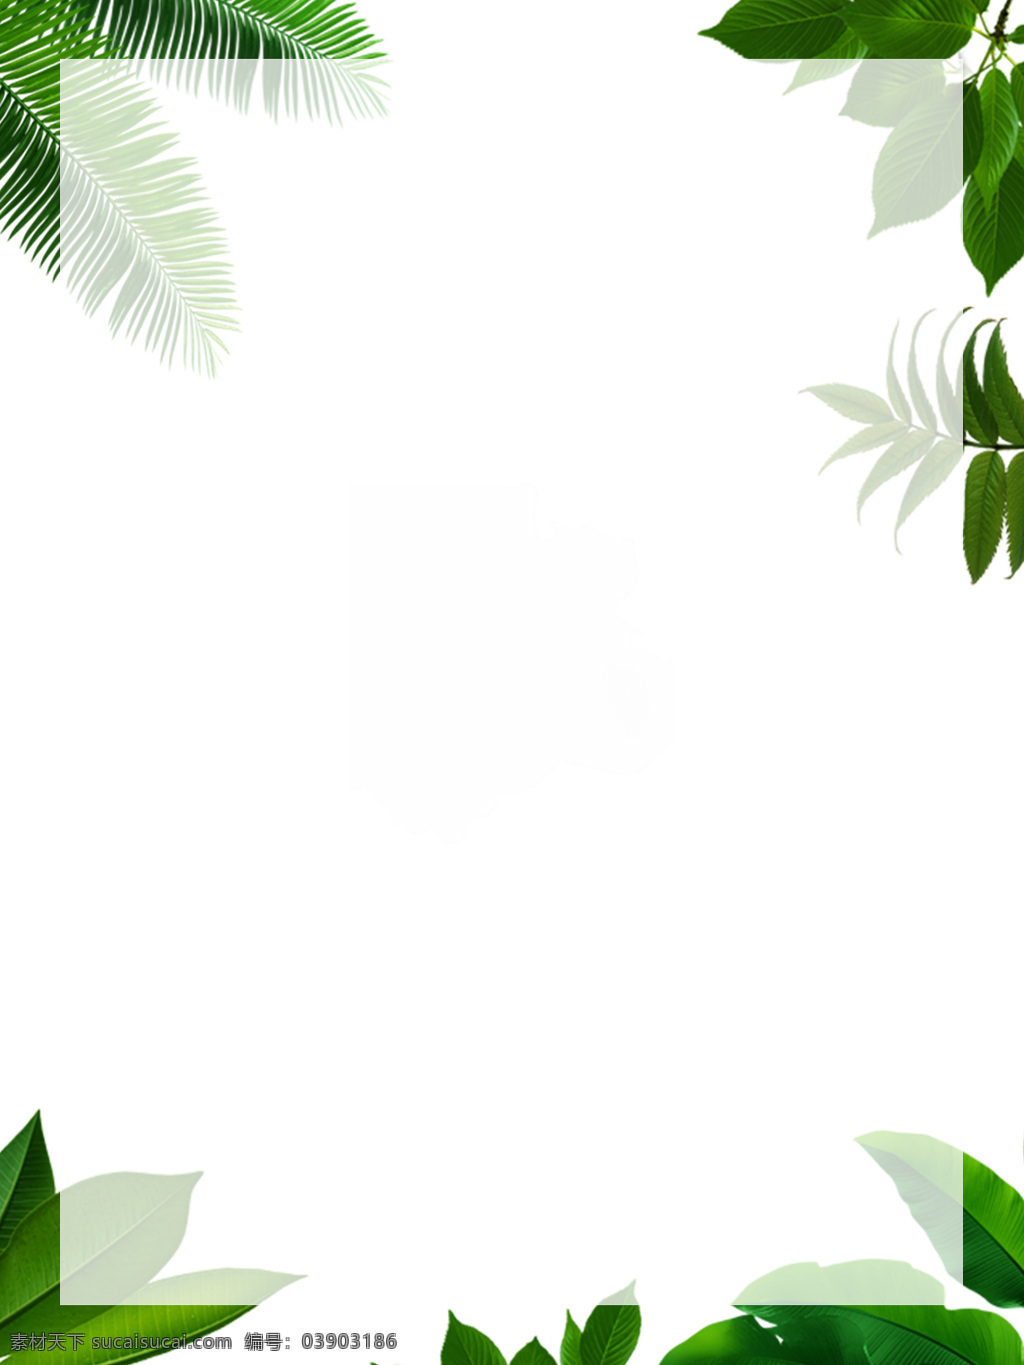 绿叶 植被 背景图片 绿叶植被背景 浅色背景 背景 绿叶植被 底纹质感背景 底纹边框 背景底纹